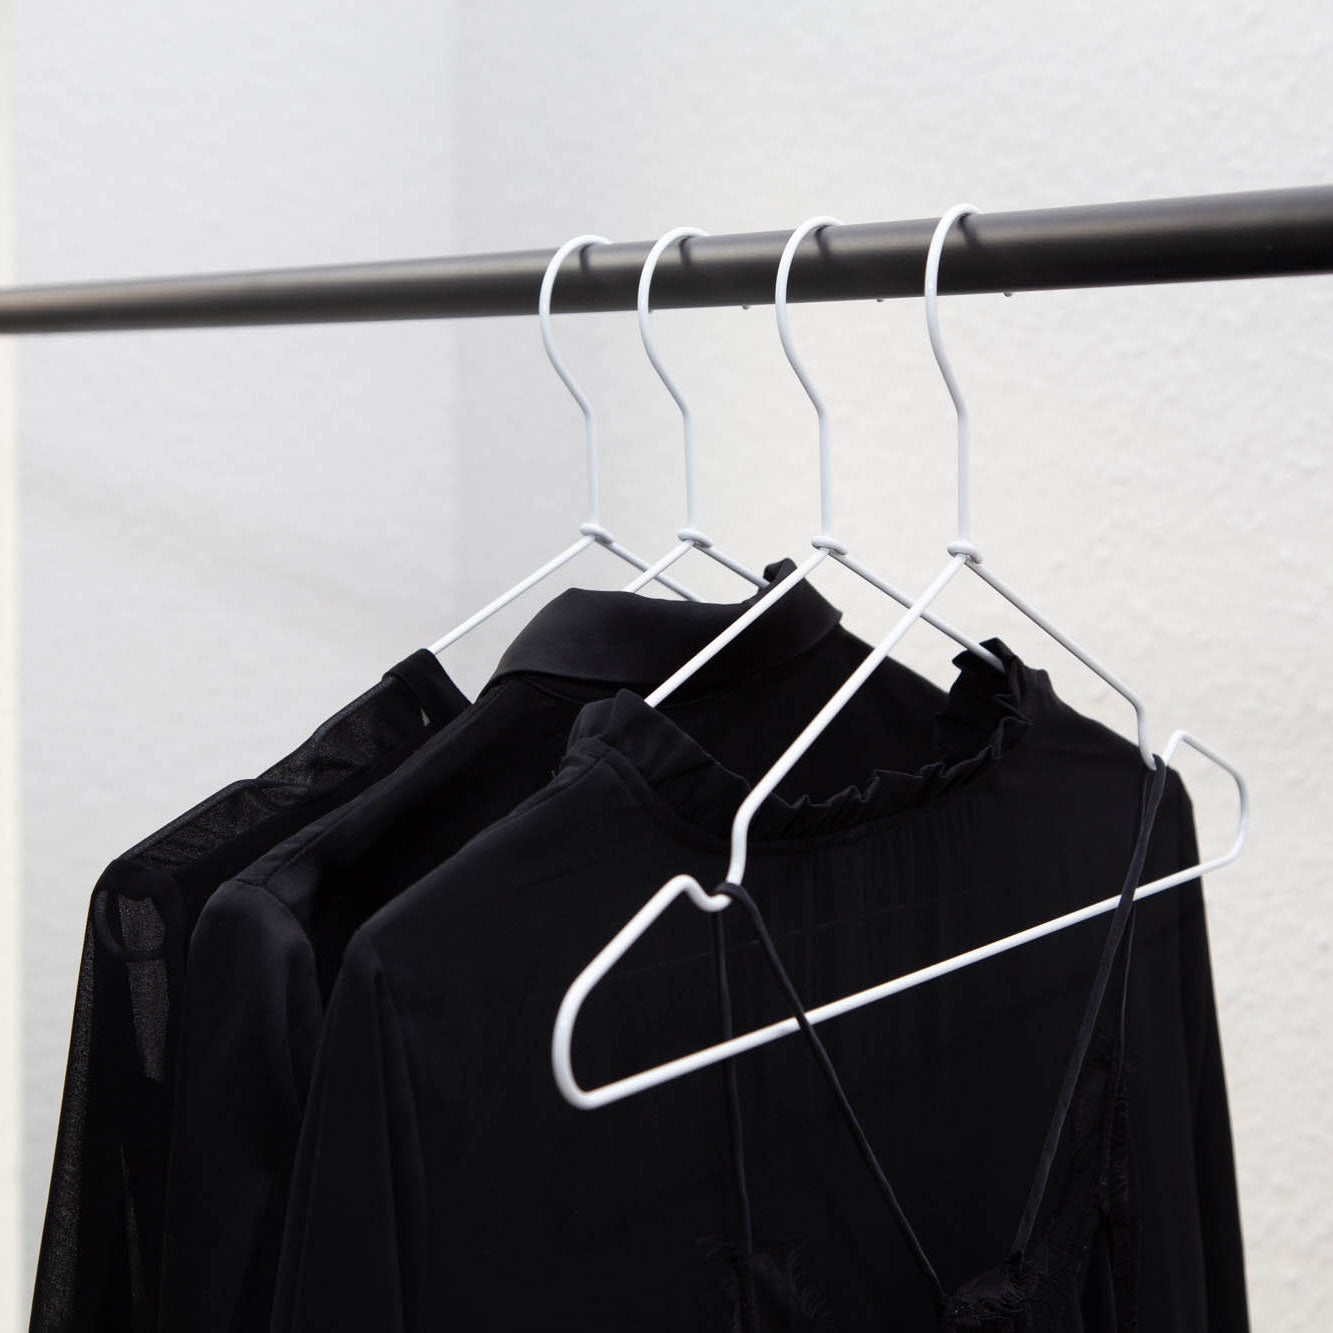  Kabudar Metal Hangers Non-Slip Suit Coat Hangers